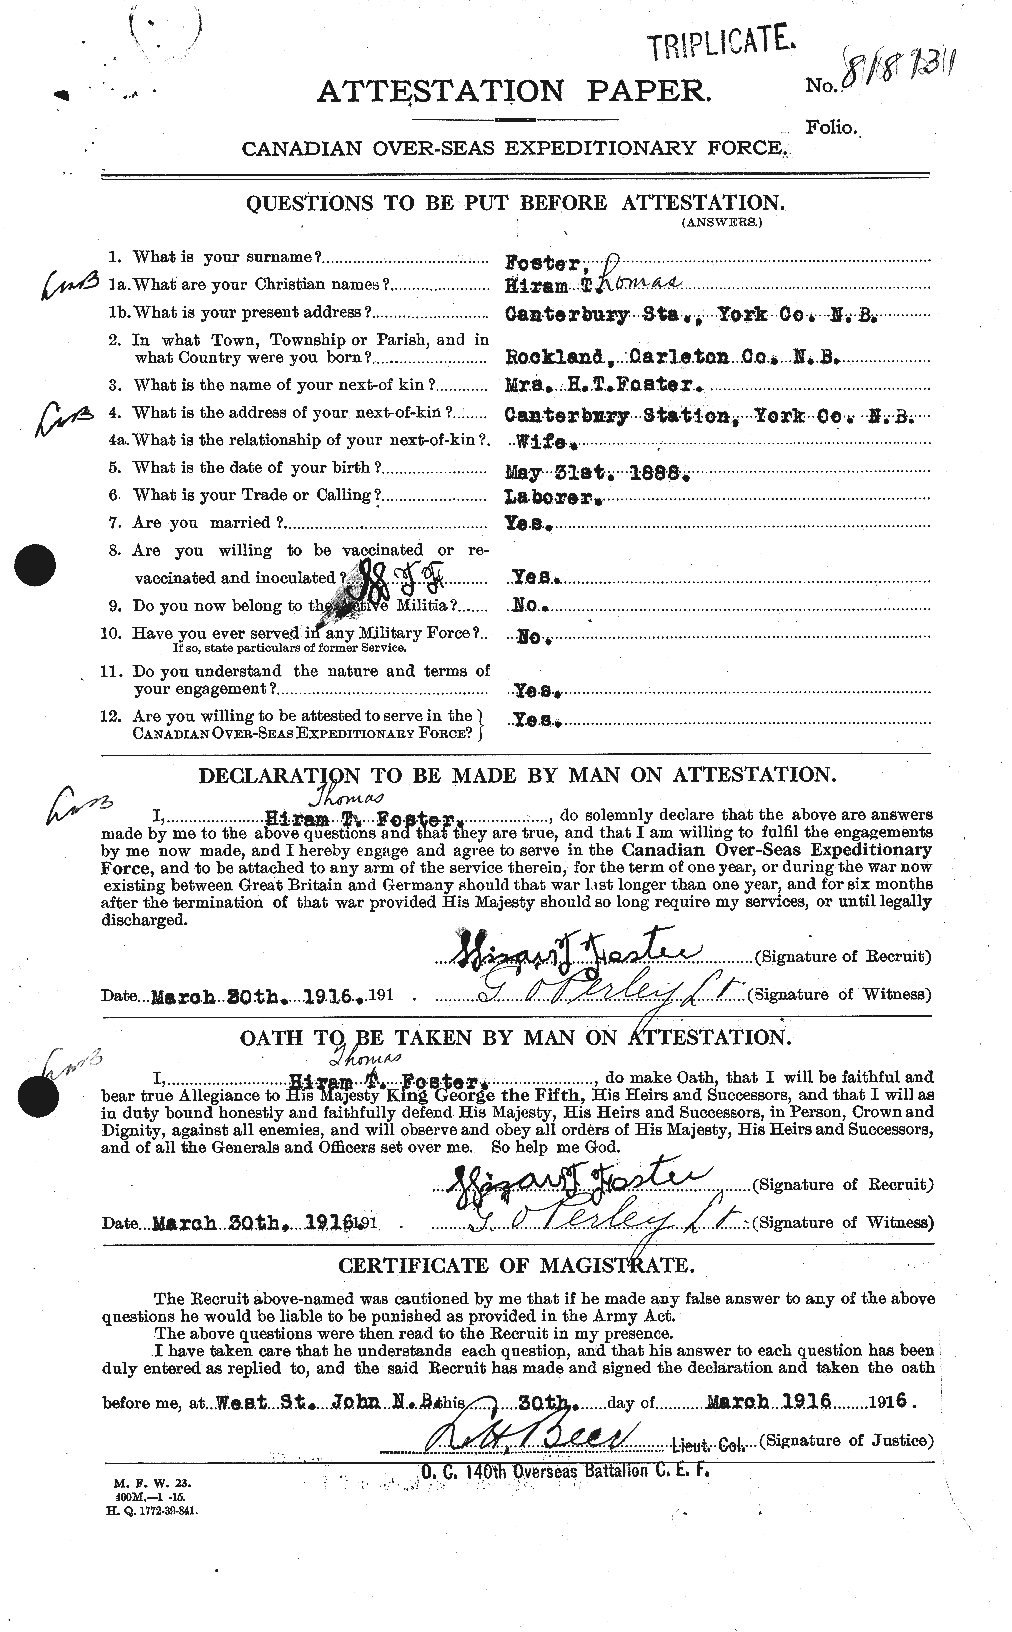 Dossiers du Personnel de la Première Guerre mondiale - CEC 333264a